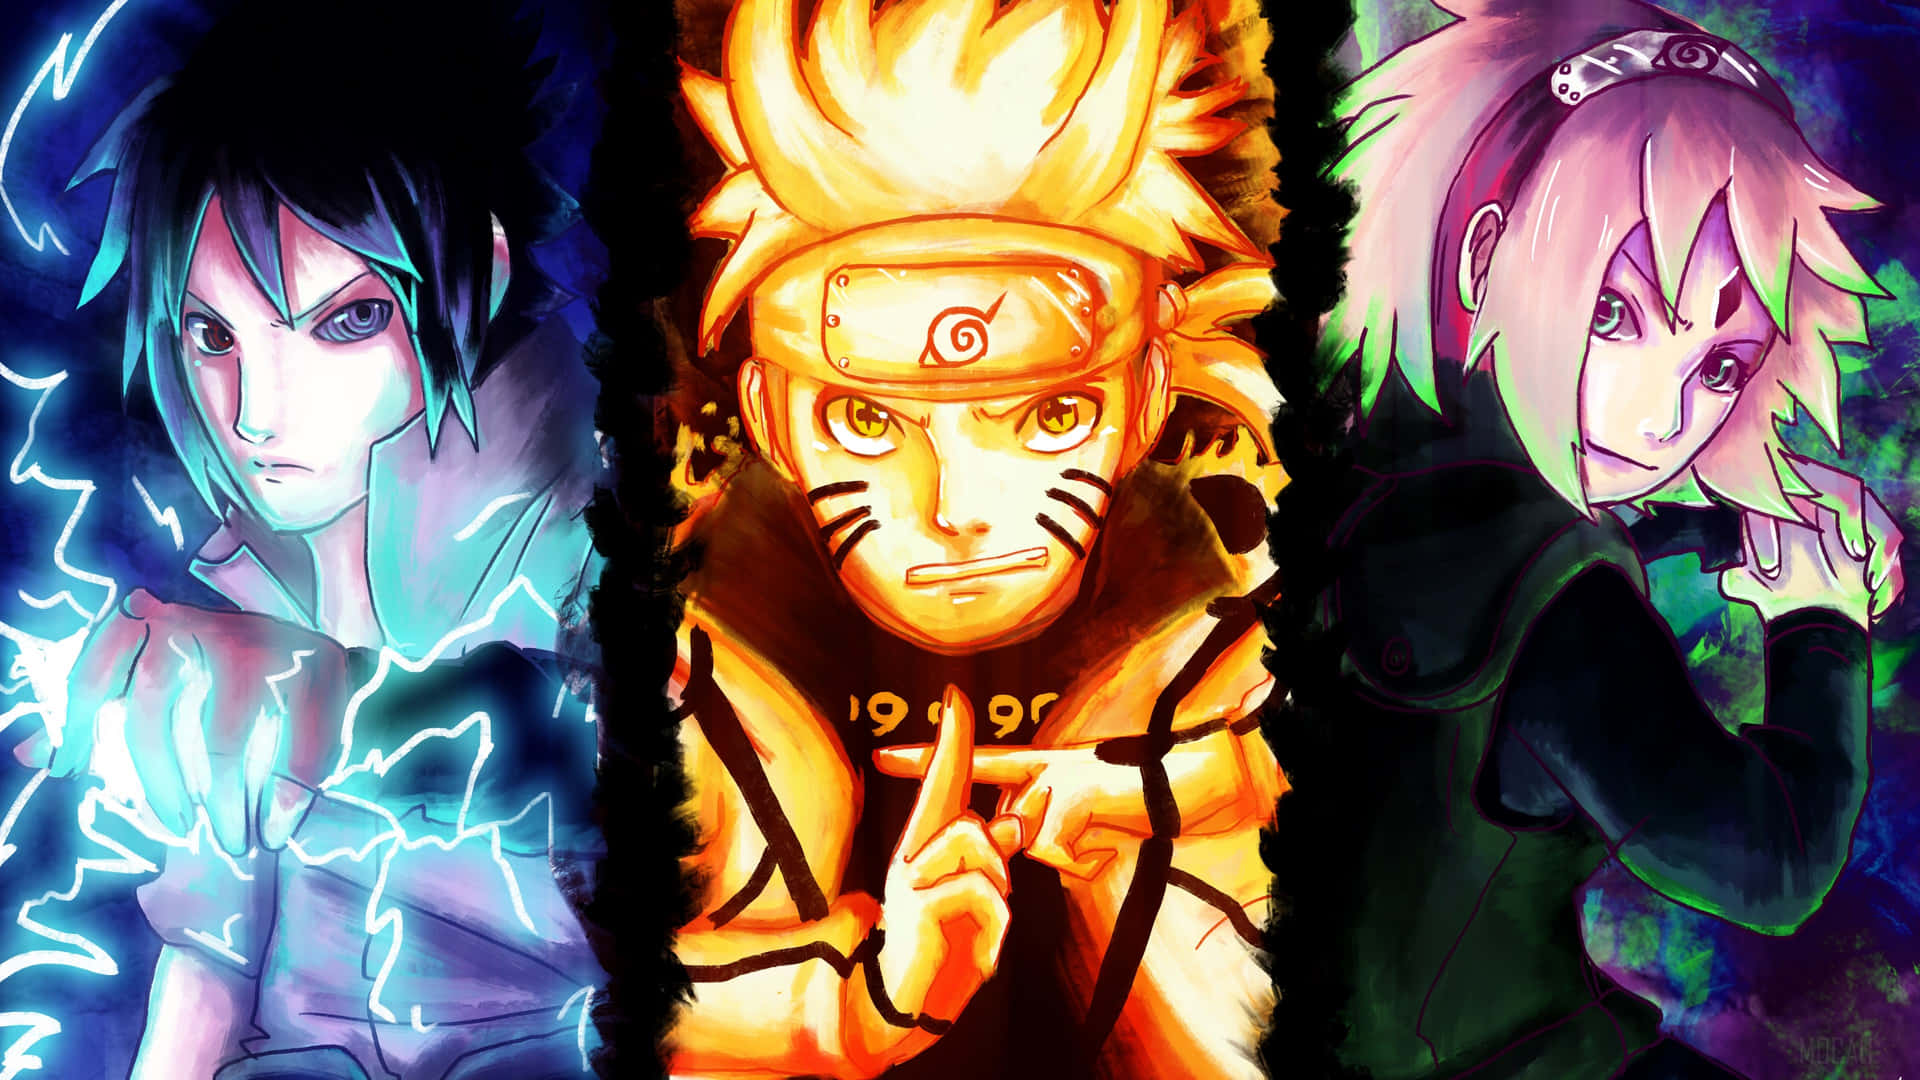 Dette desktop baggrund er temaet Naruto.